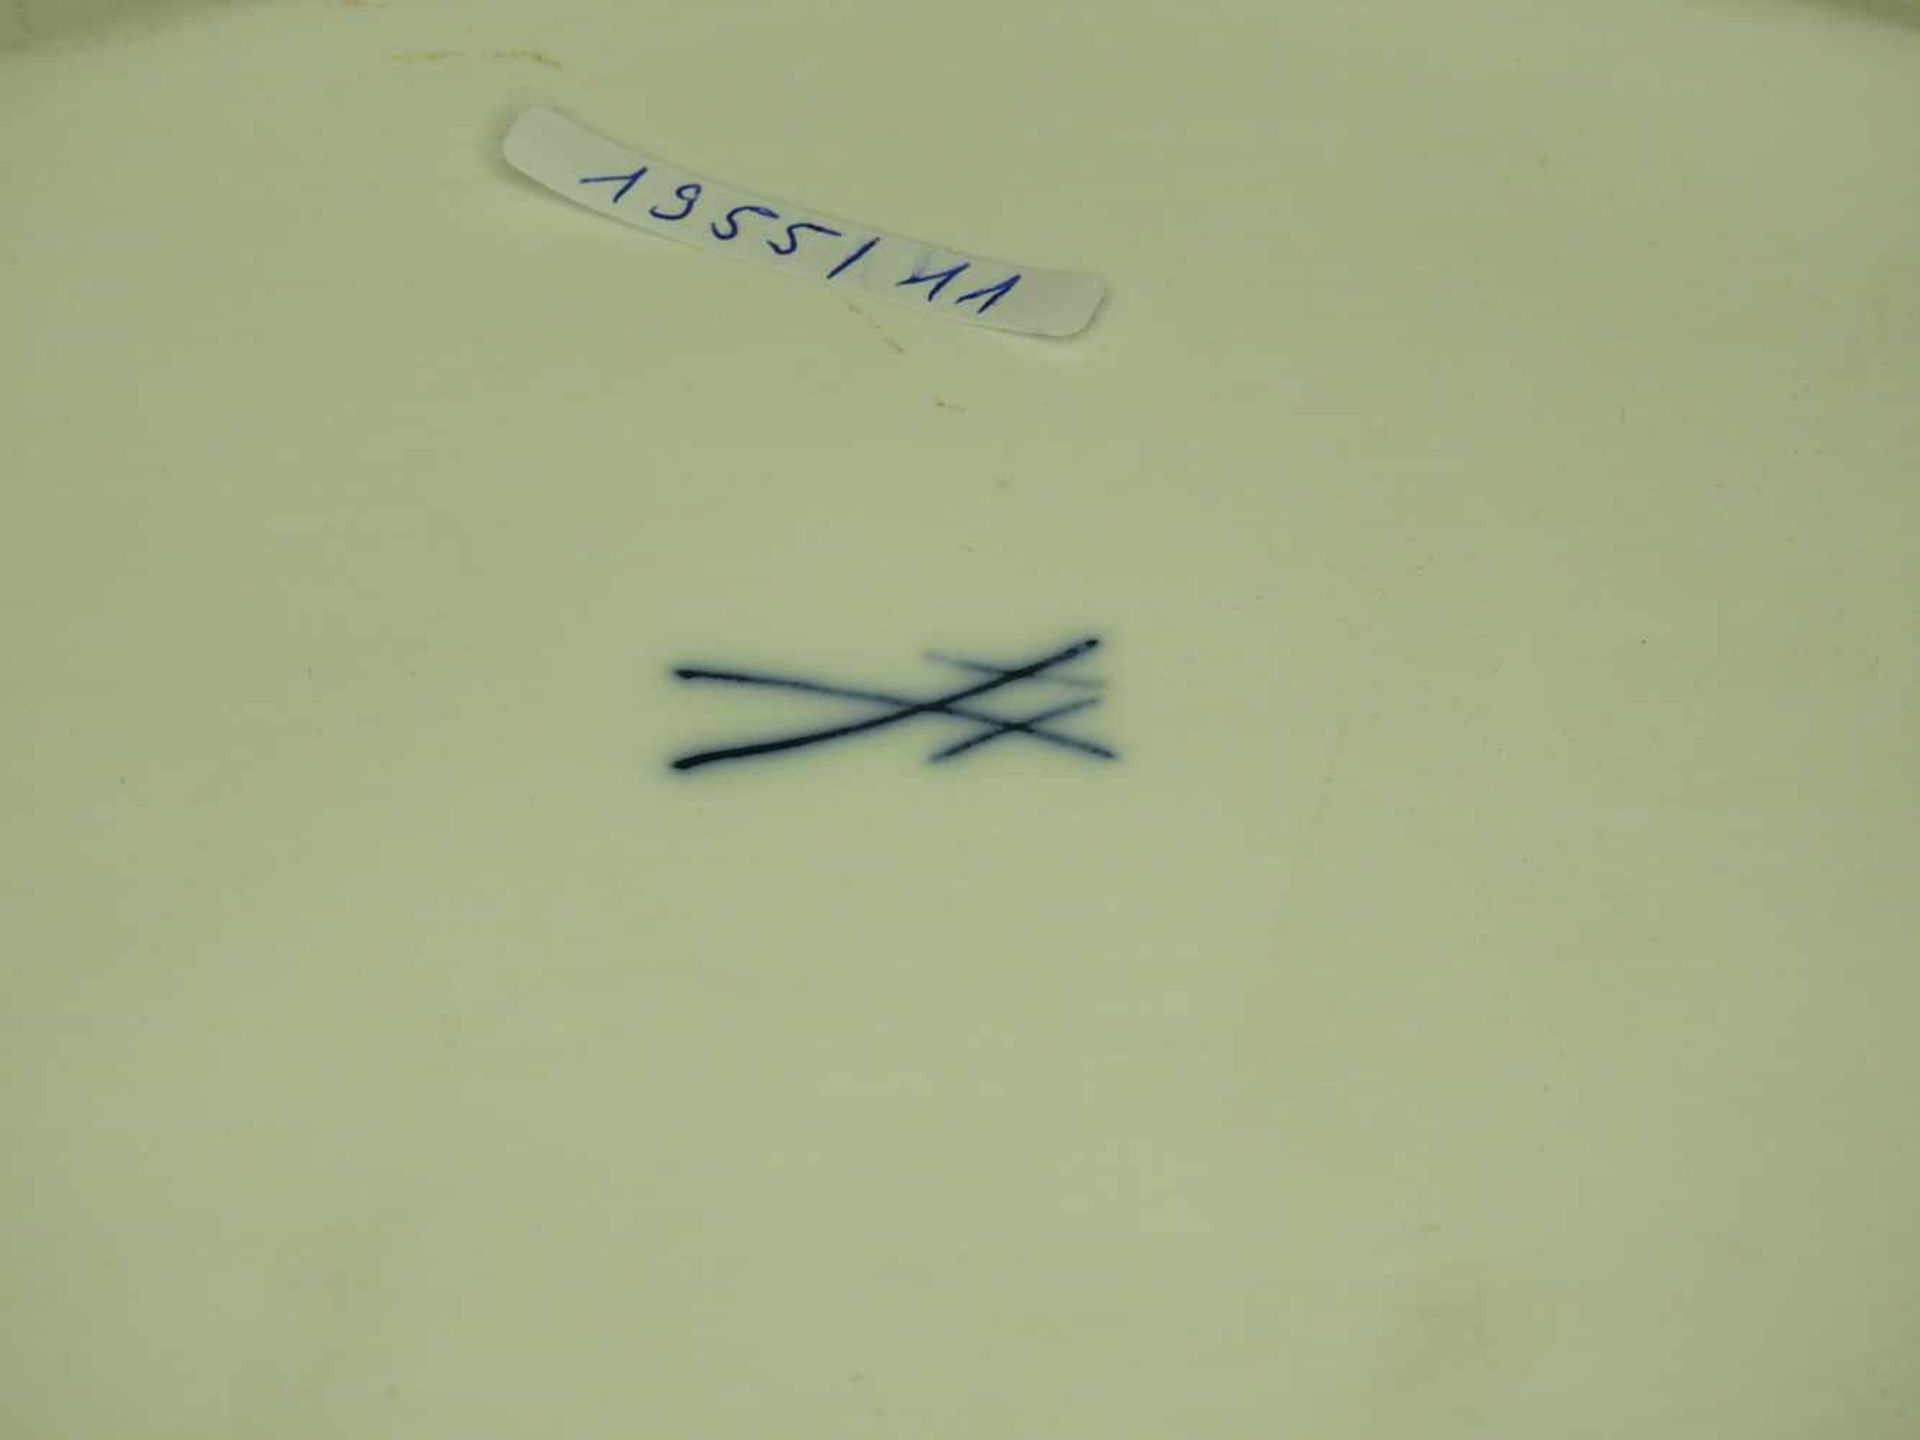 Meissen, DeckelterrinePorzellan, am Boden mit blauer Schwertermarke gekennzeichnet, nummeriert. - Image 2 of 2